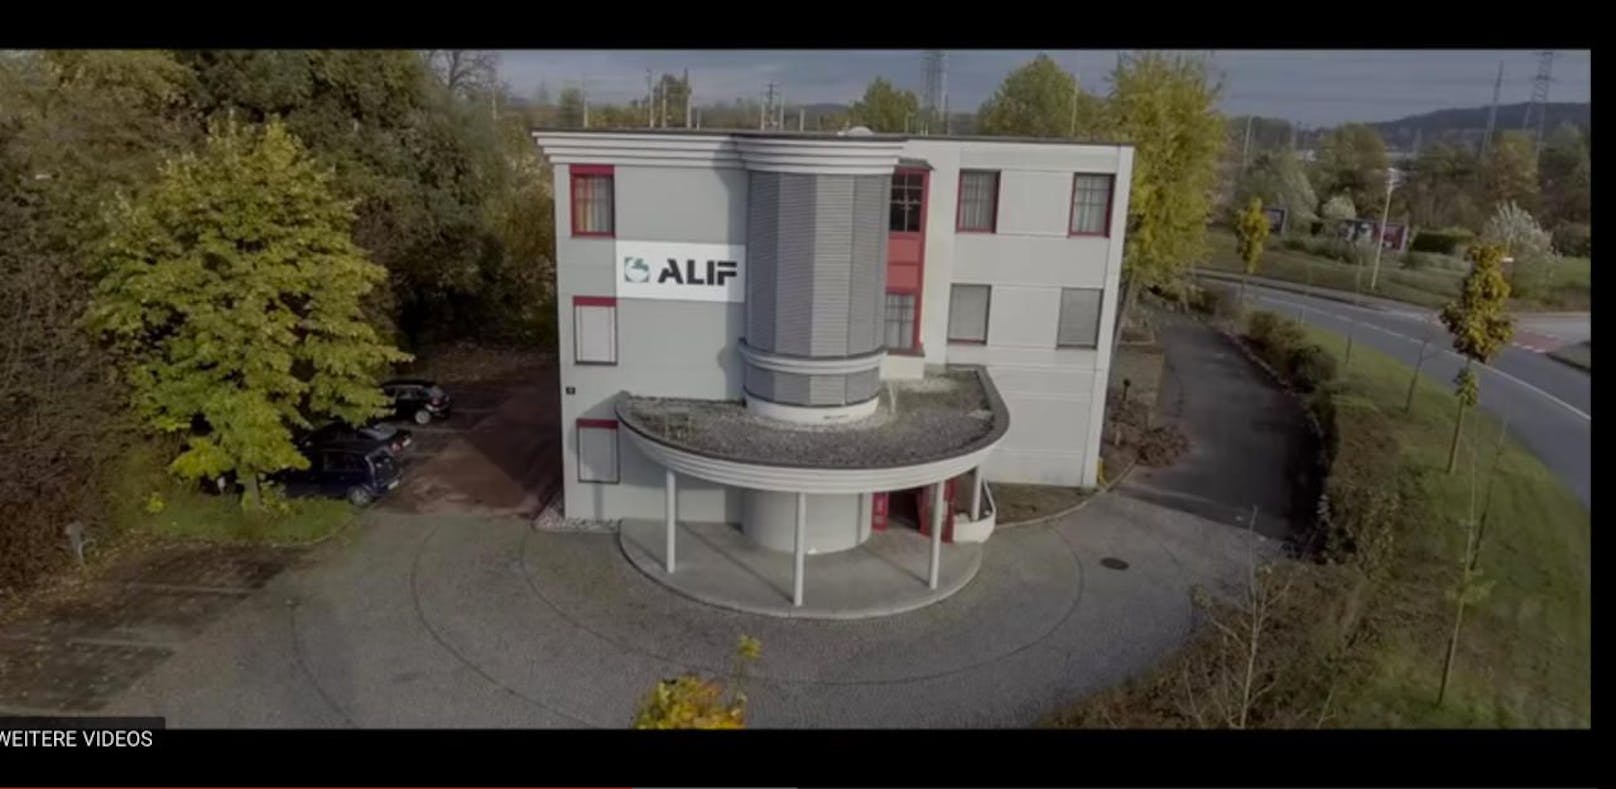 Im Gebäude des Alif in der Lunzerstraße soll die Imam-Schule entstehen.